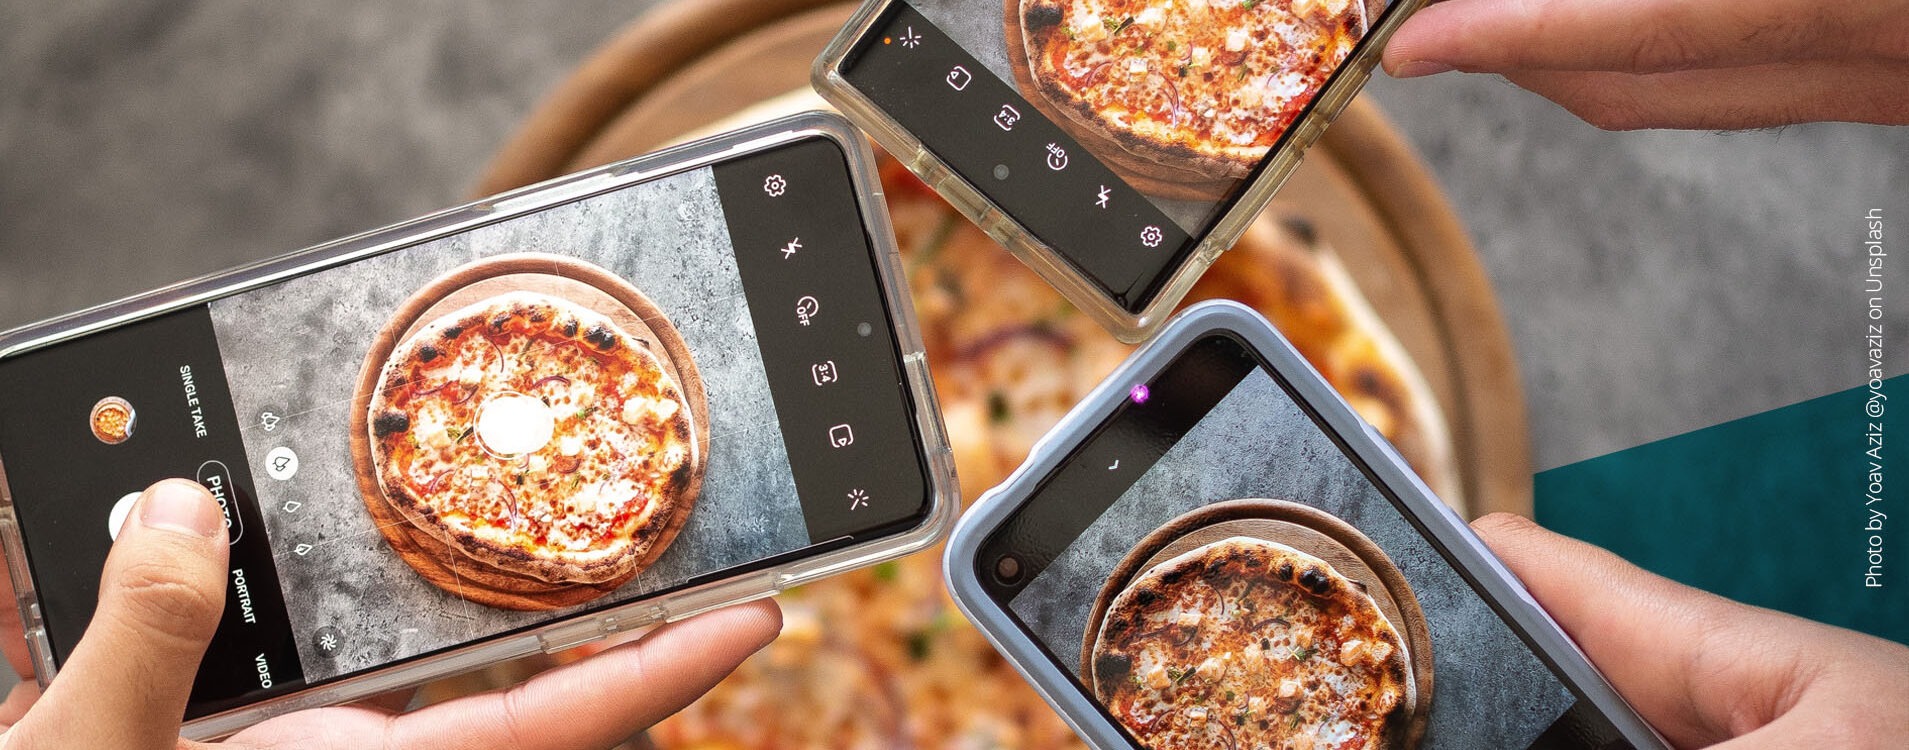 Drei Handys von oben, die ein Bild von einer Pizza machen